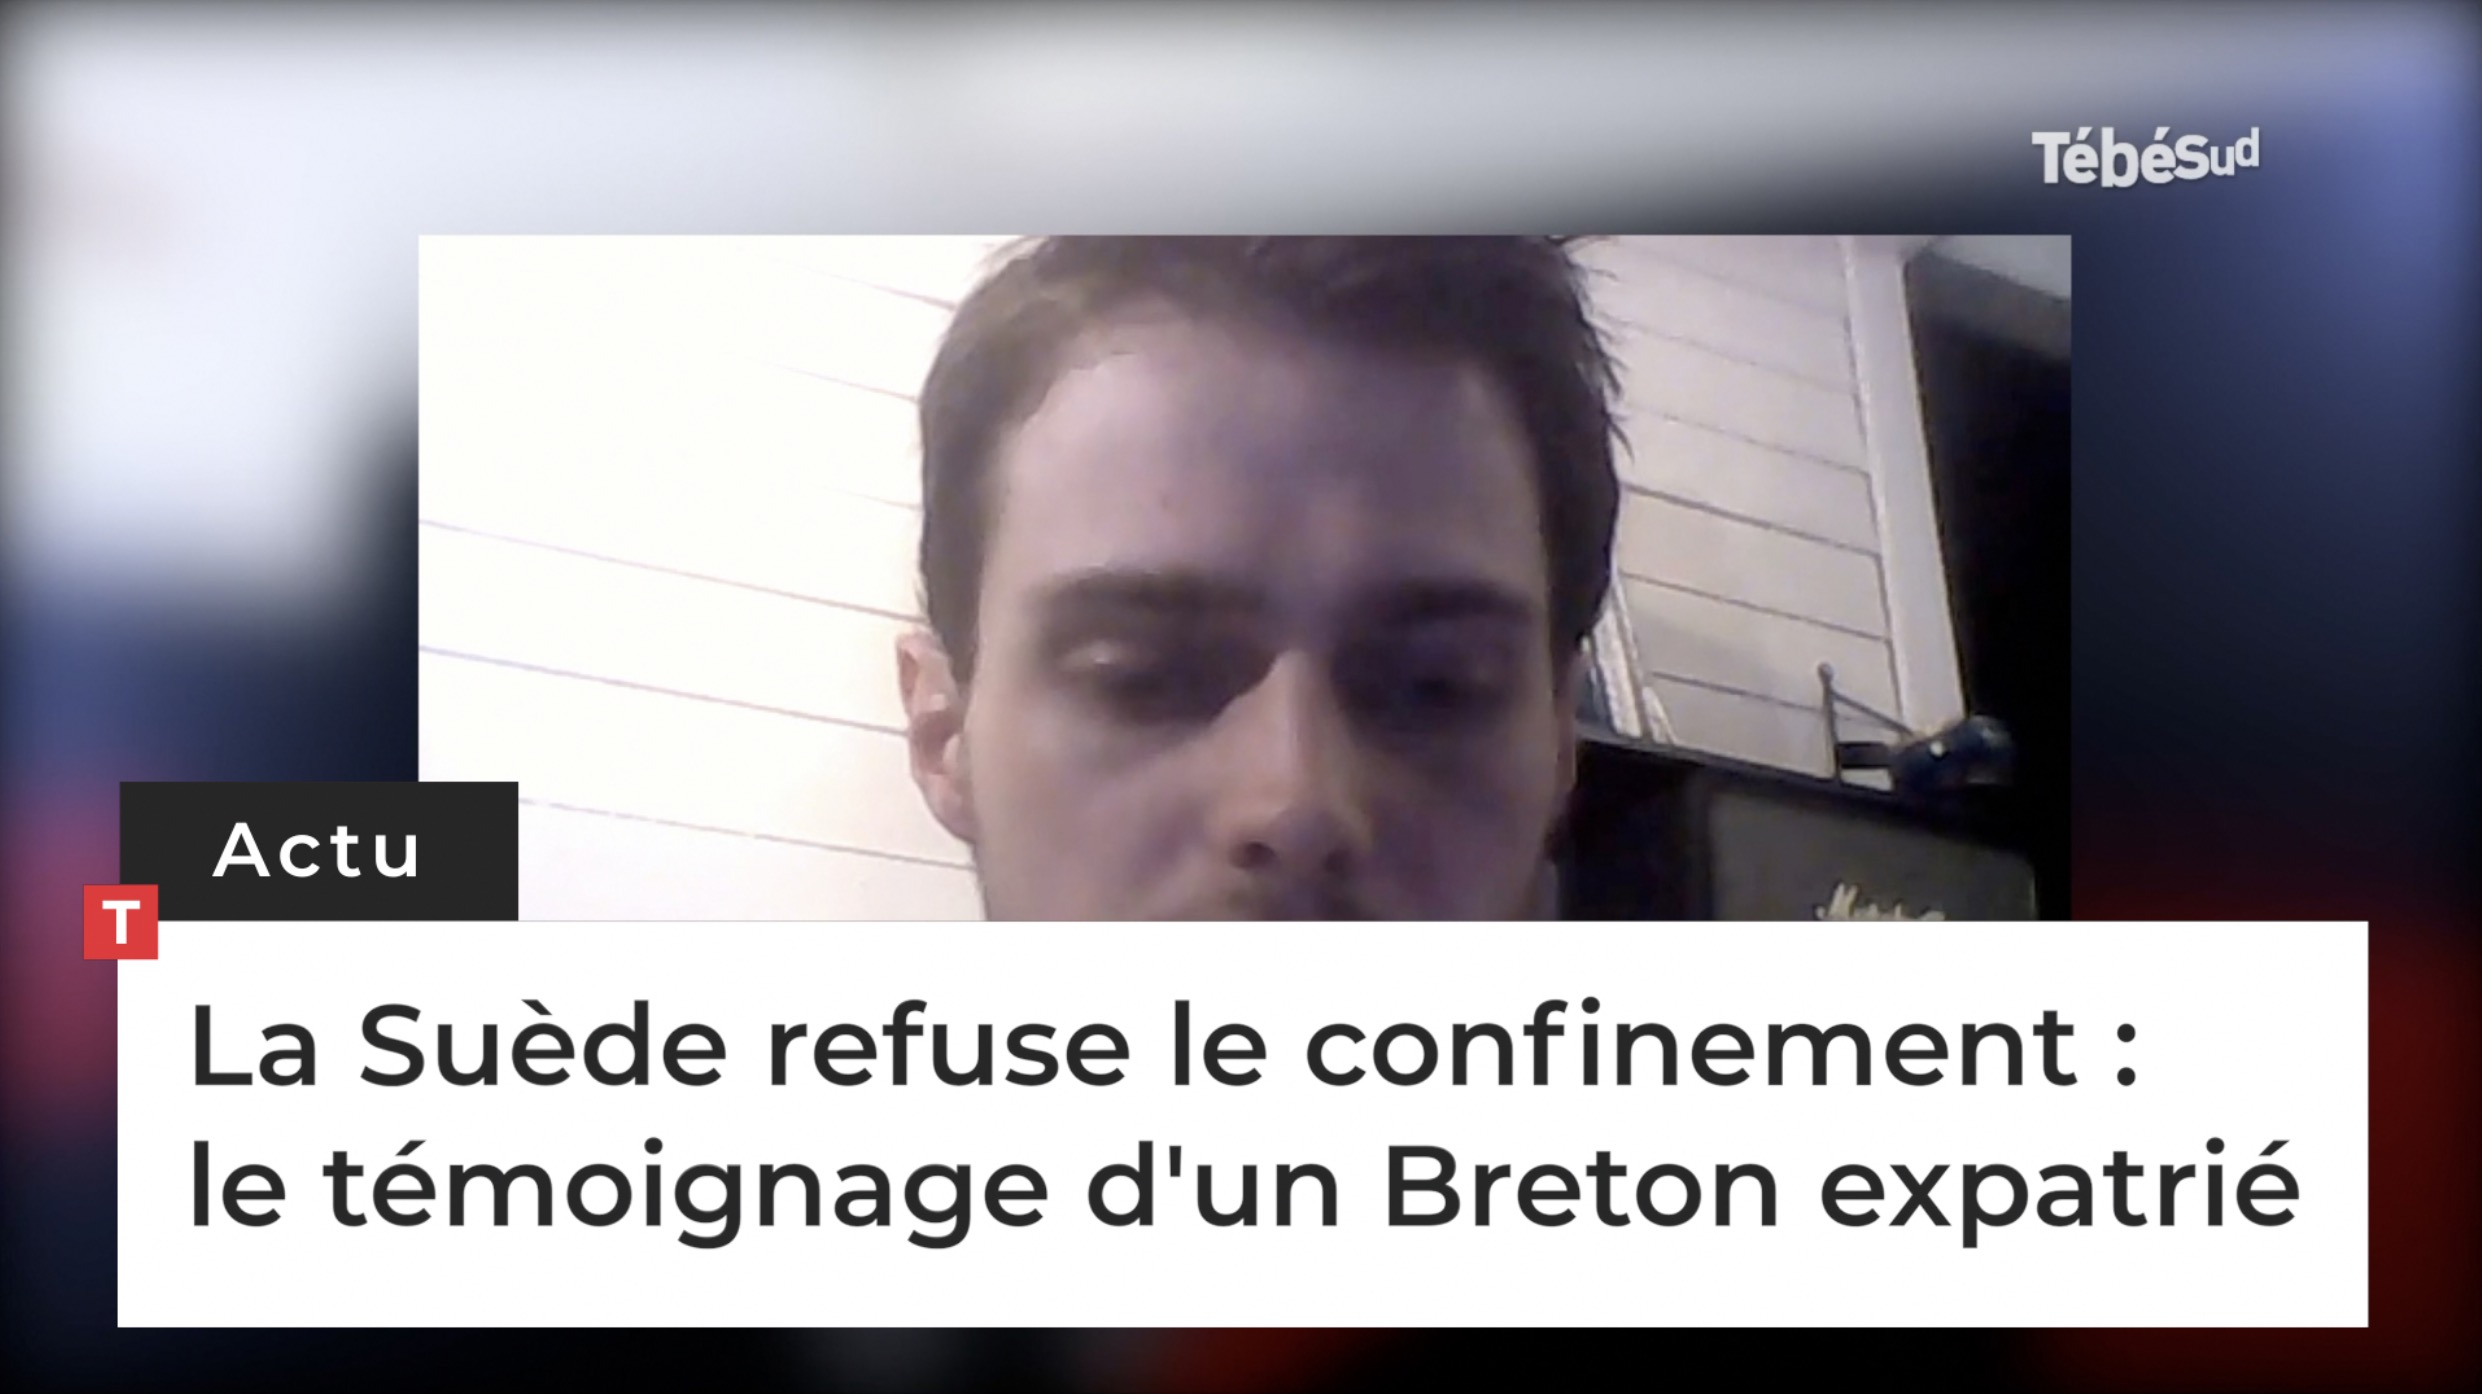 La Suède refuse le confinement : le témoignage d'un Breton expatrié (Le Télégramme)